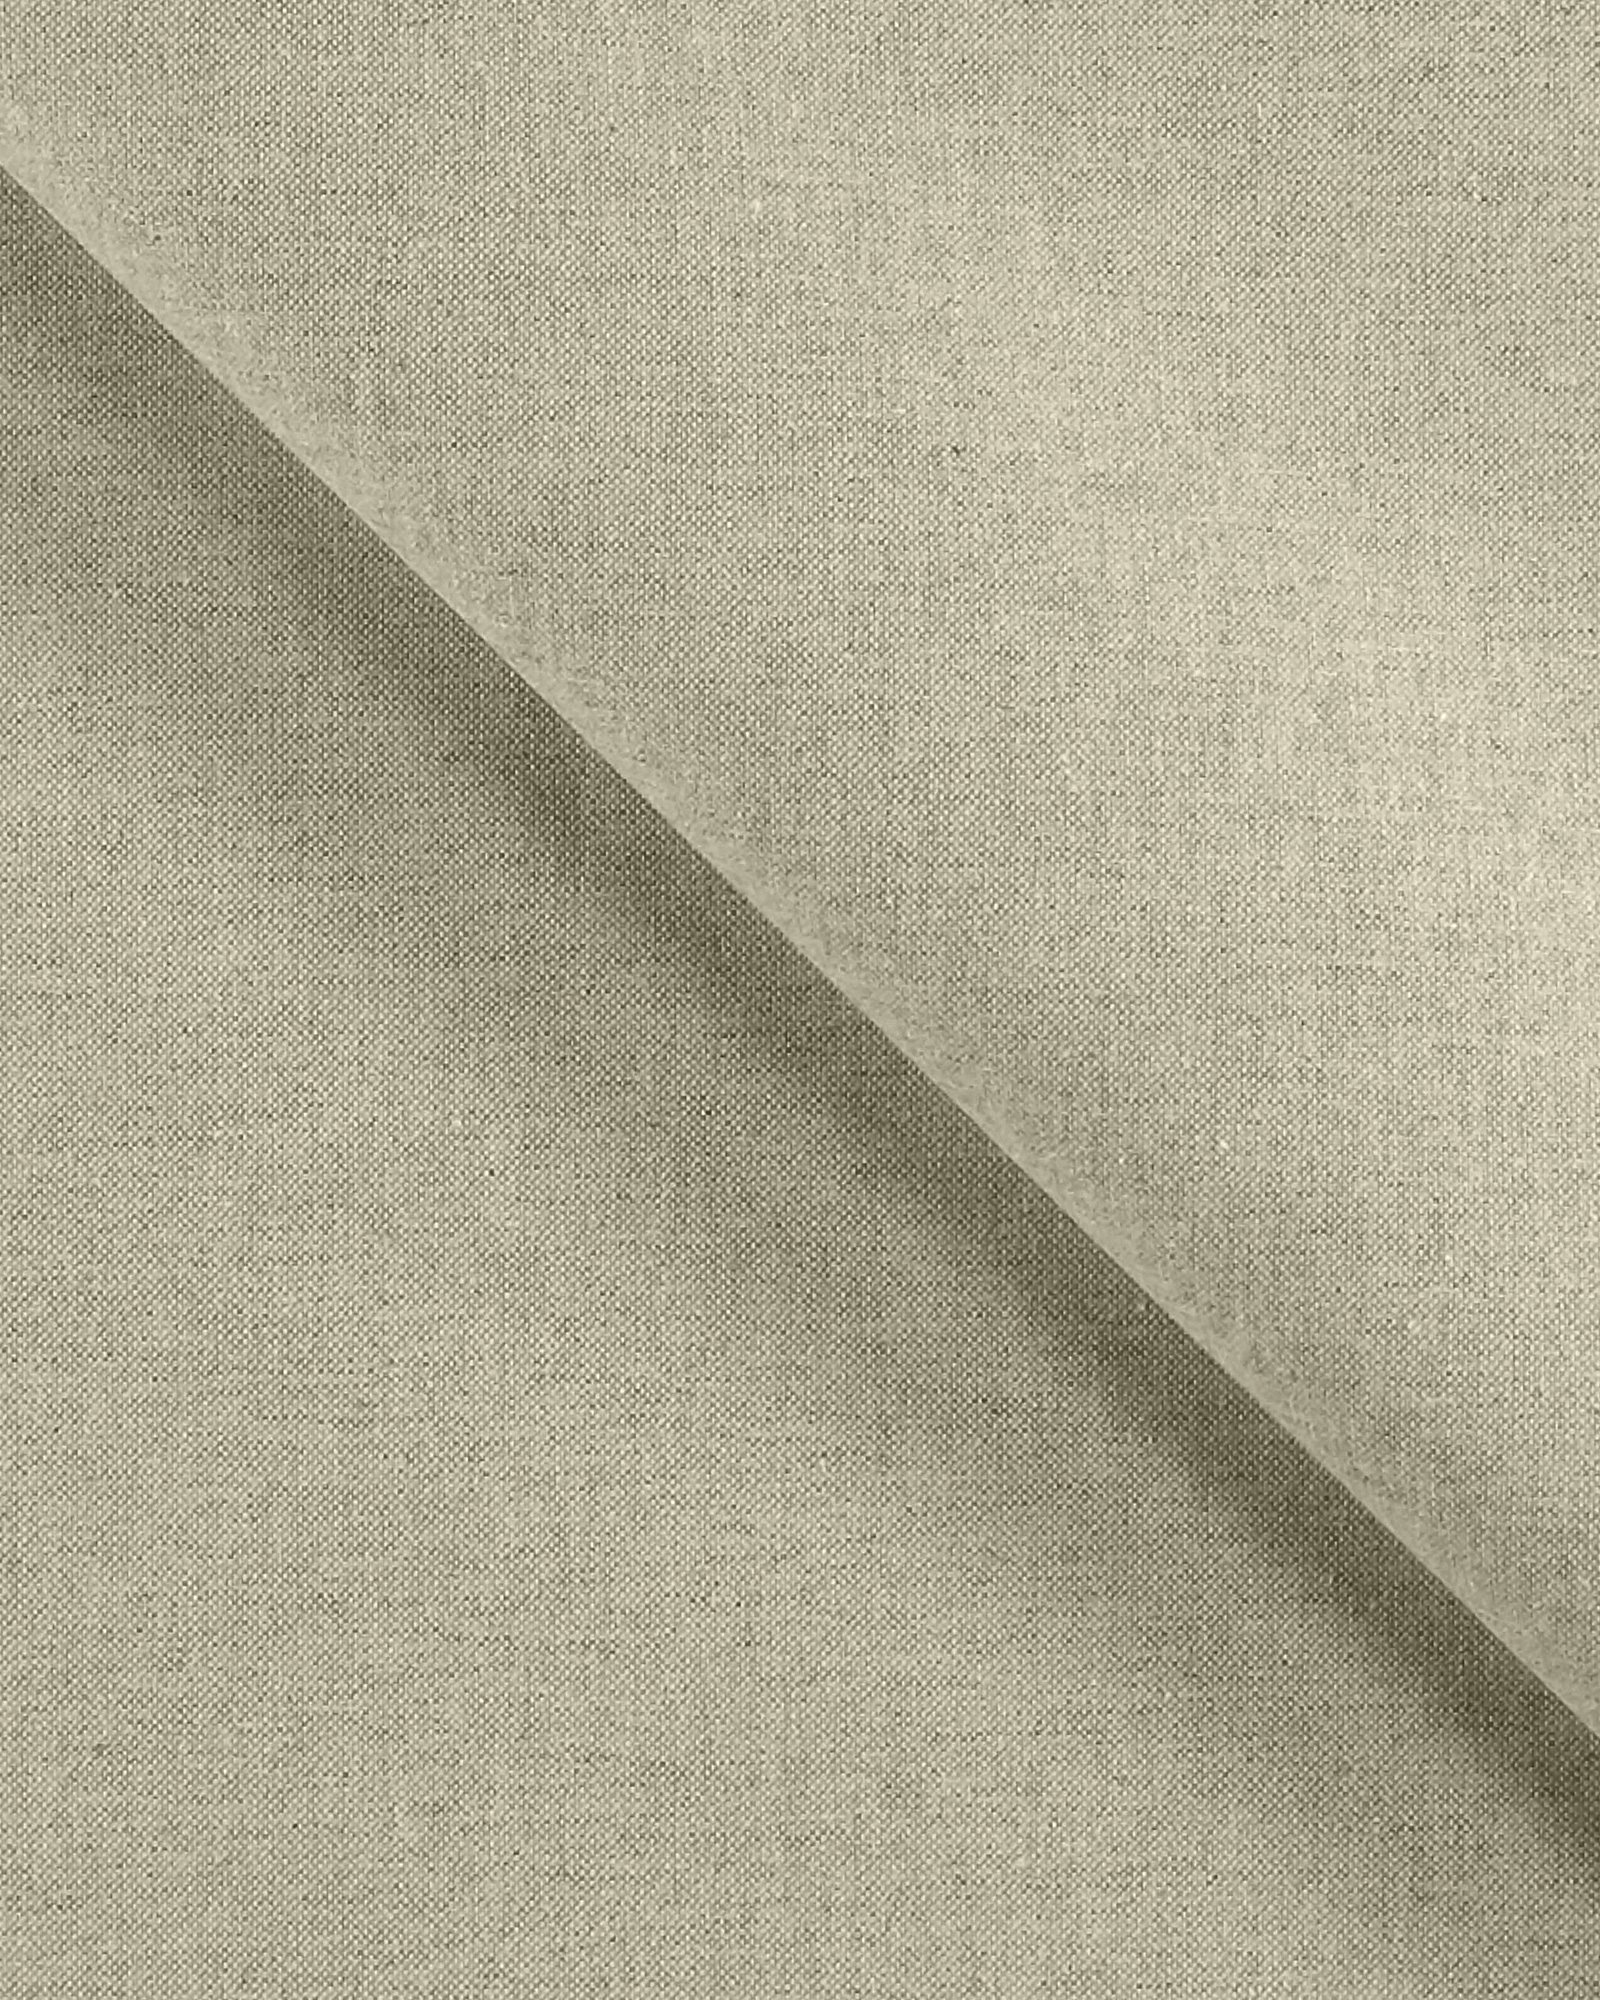 Tekstilvoksdug hørlook/lys grå 870284_pack